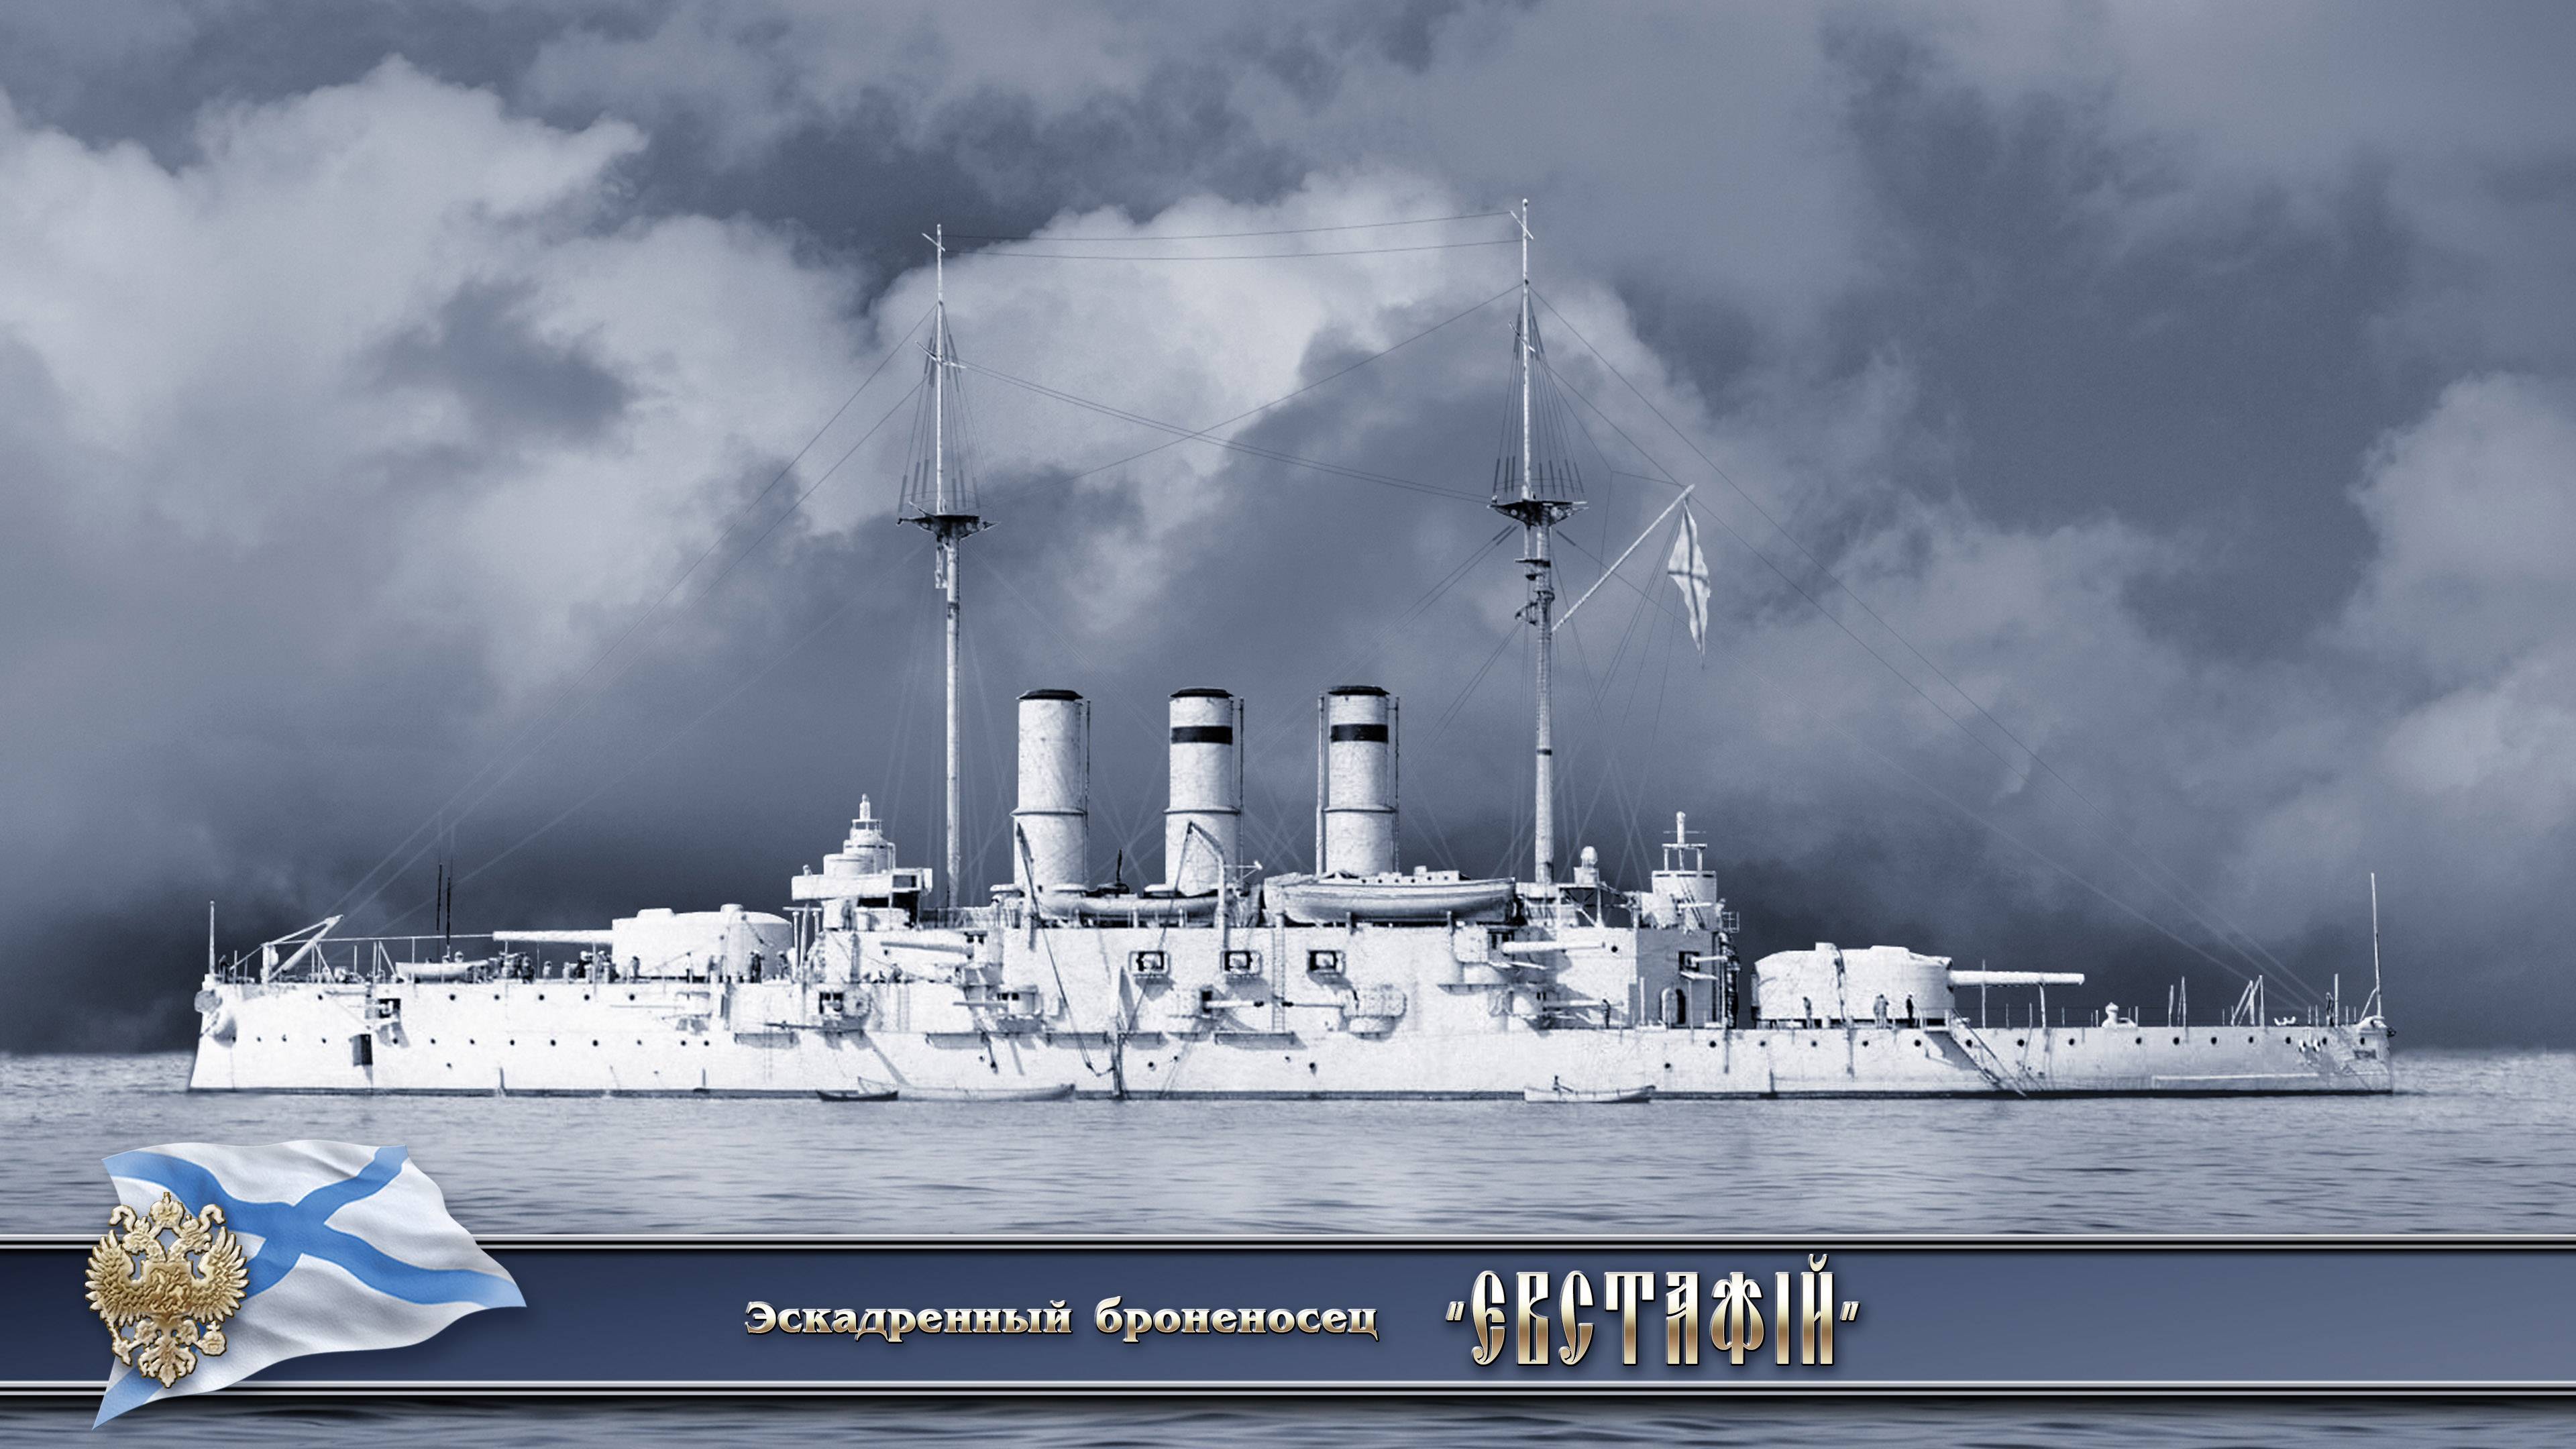 Модели военно-морского музея. броненосные крейсера 1-го ранга.